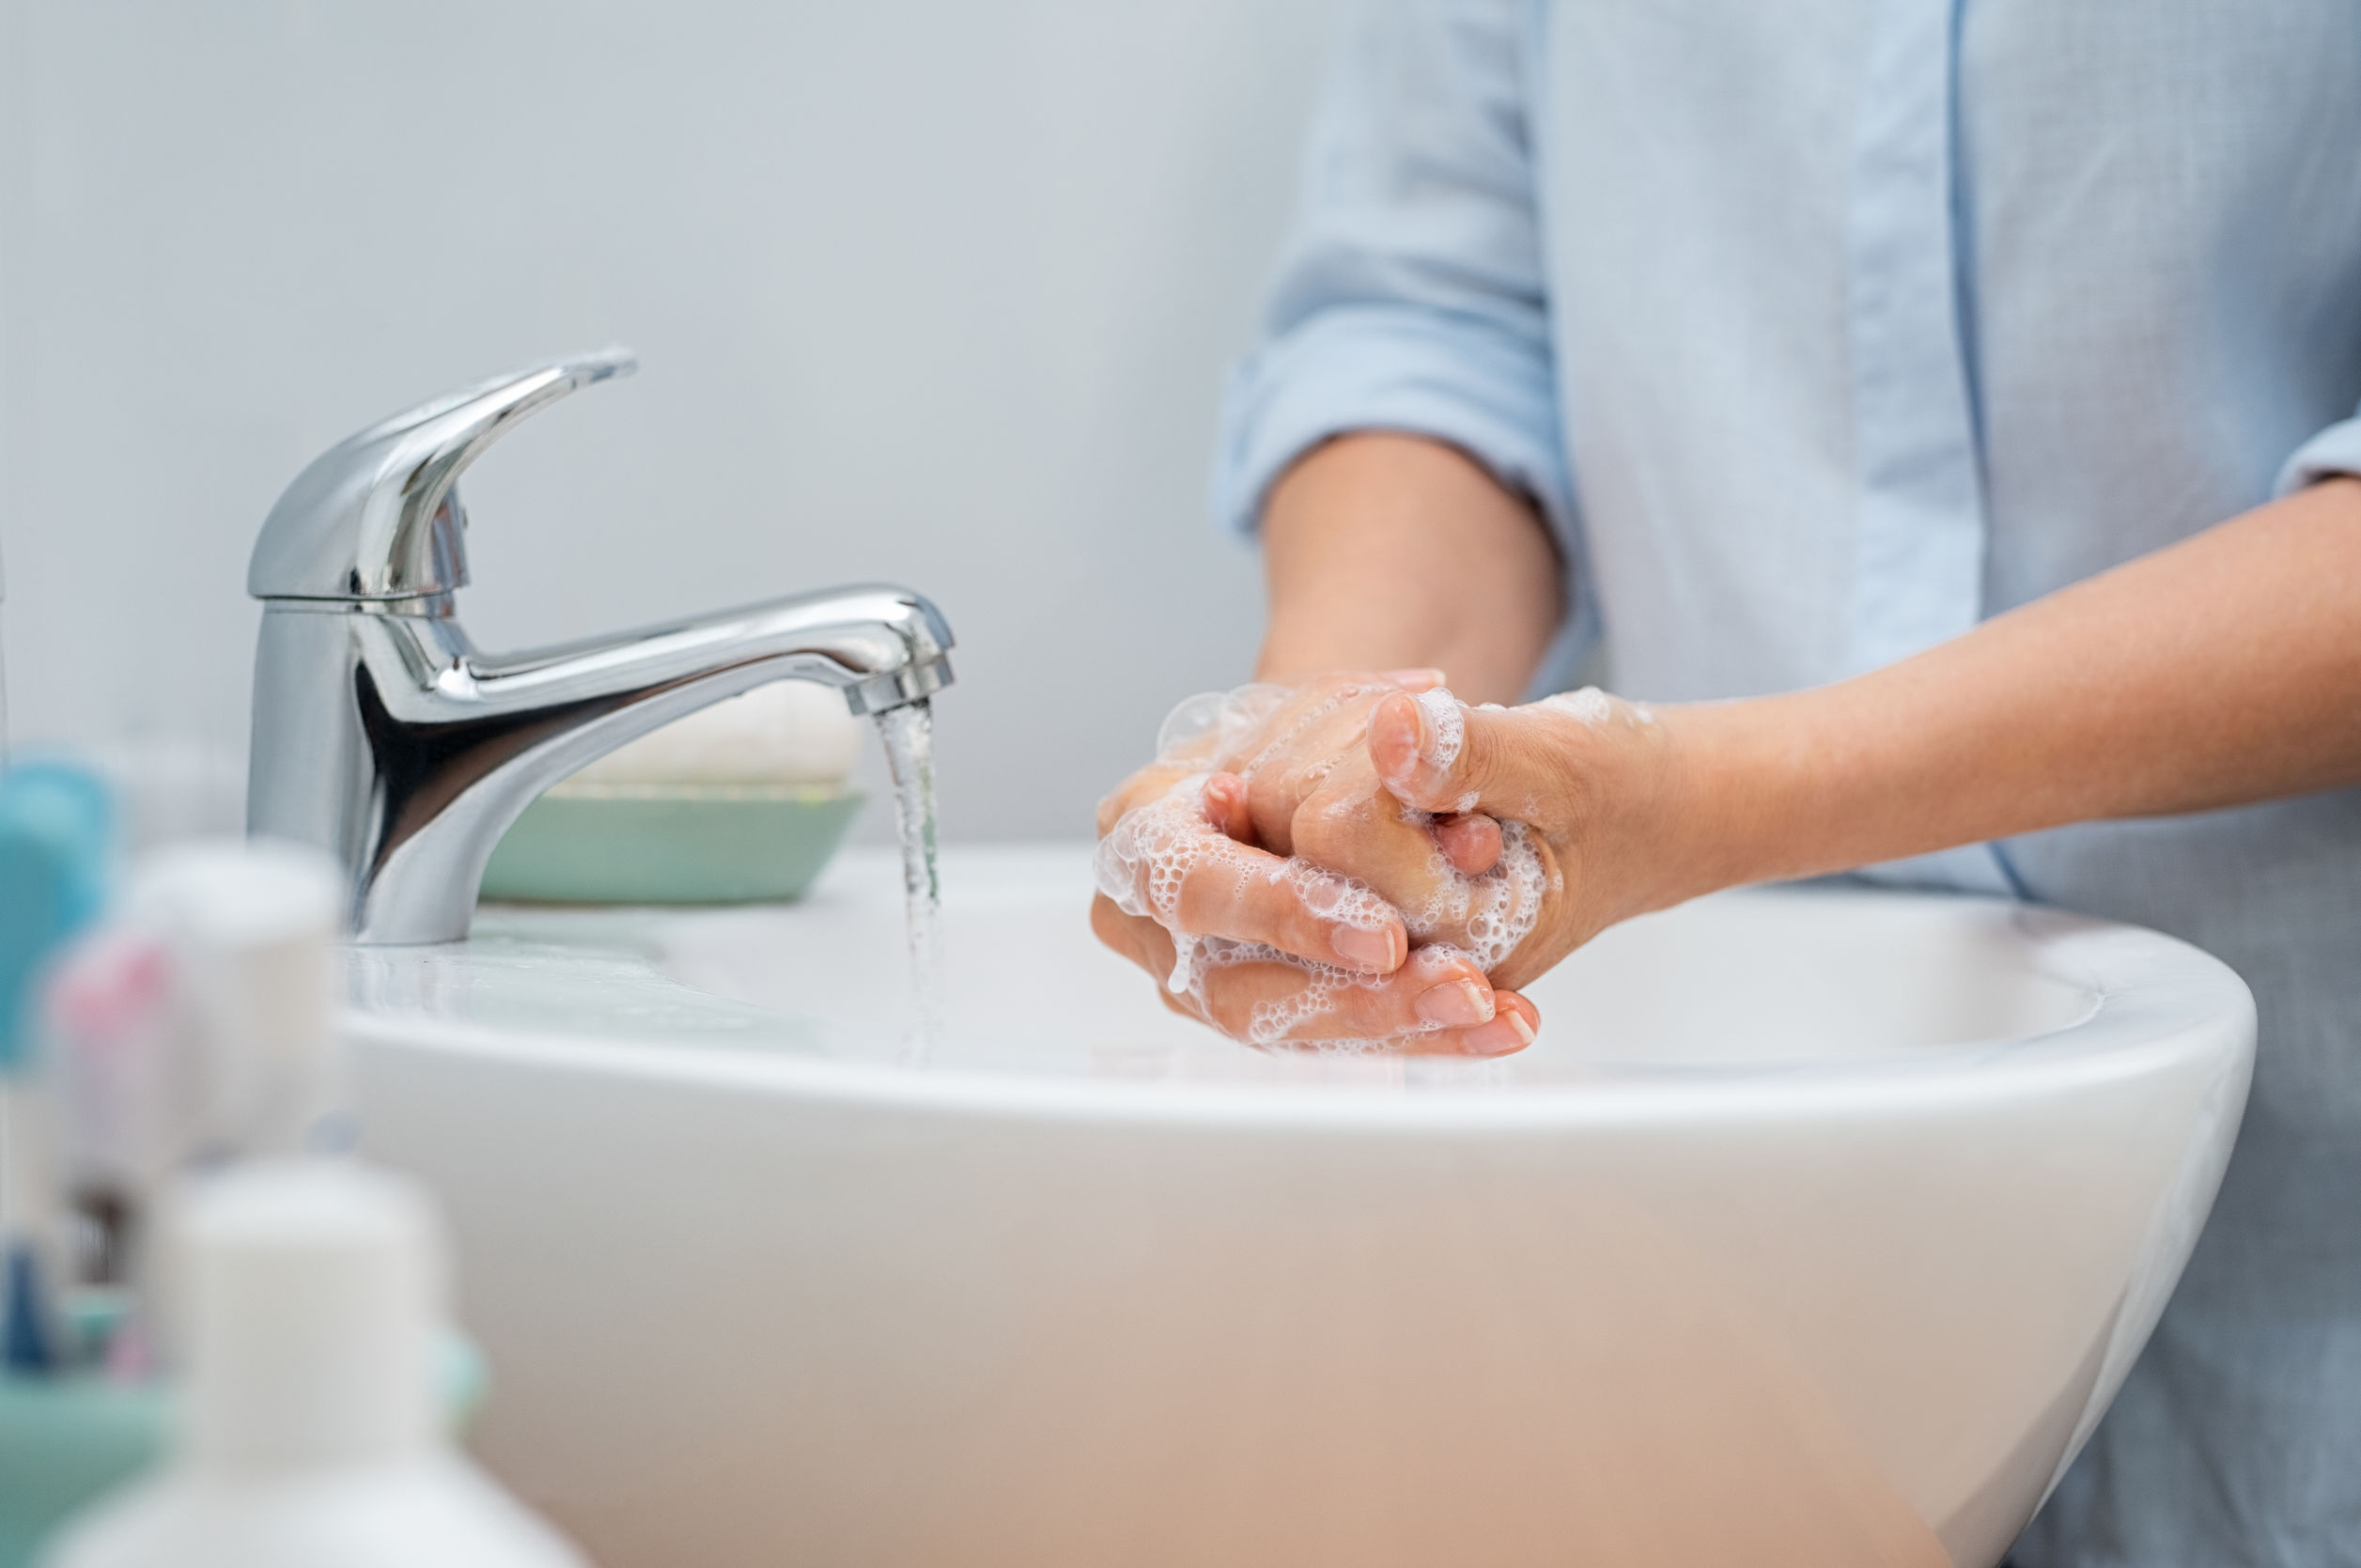 Окр моет руки. Мытье рук с мылом. Мыльные руки. Женские руки с мылом. Мыло для рук.